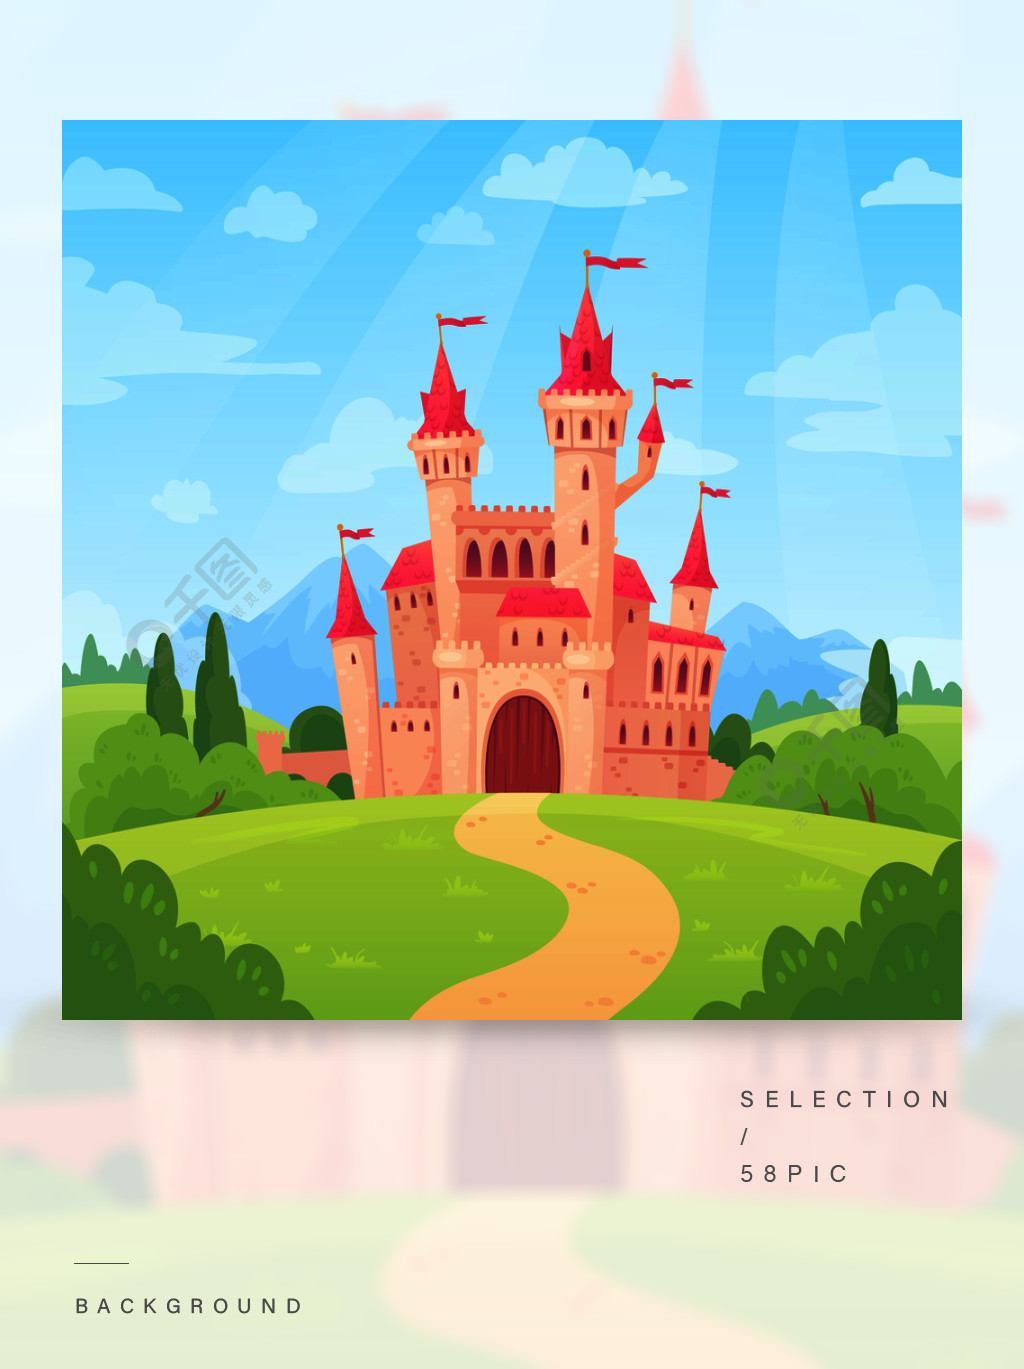 的童话风景幻想宫殿塔,梦幻般的童话房子或魔法城堡王国卡通矢量背景